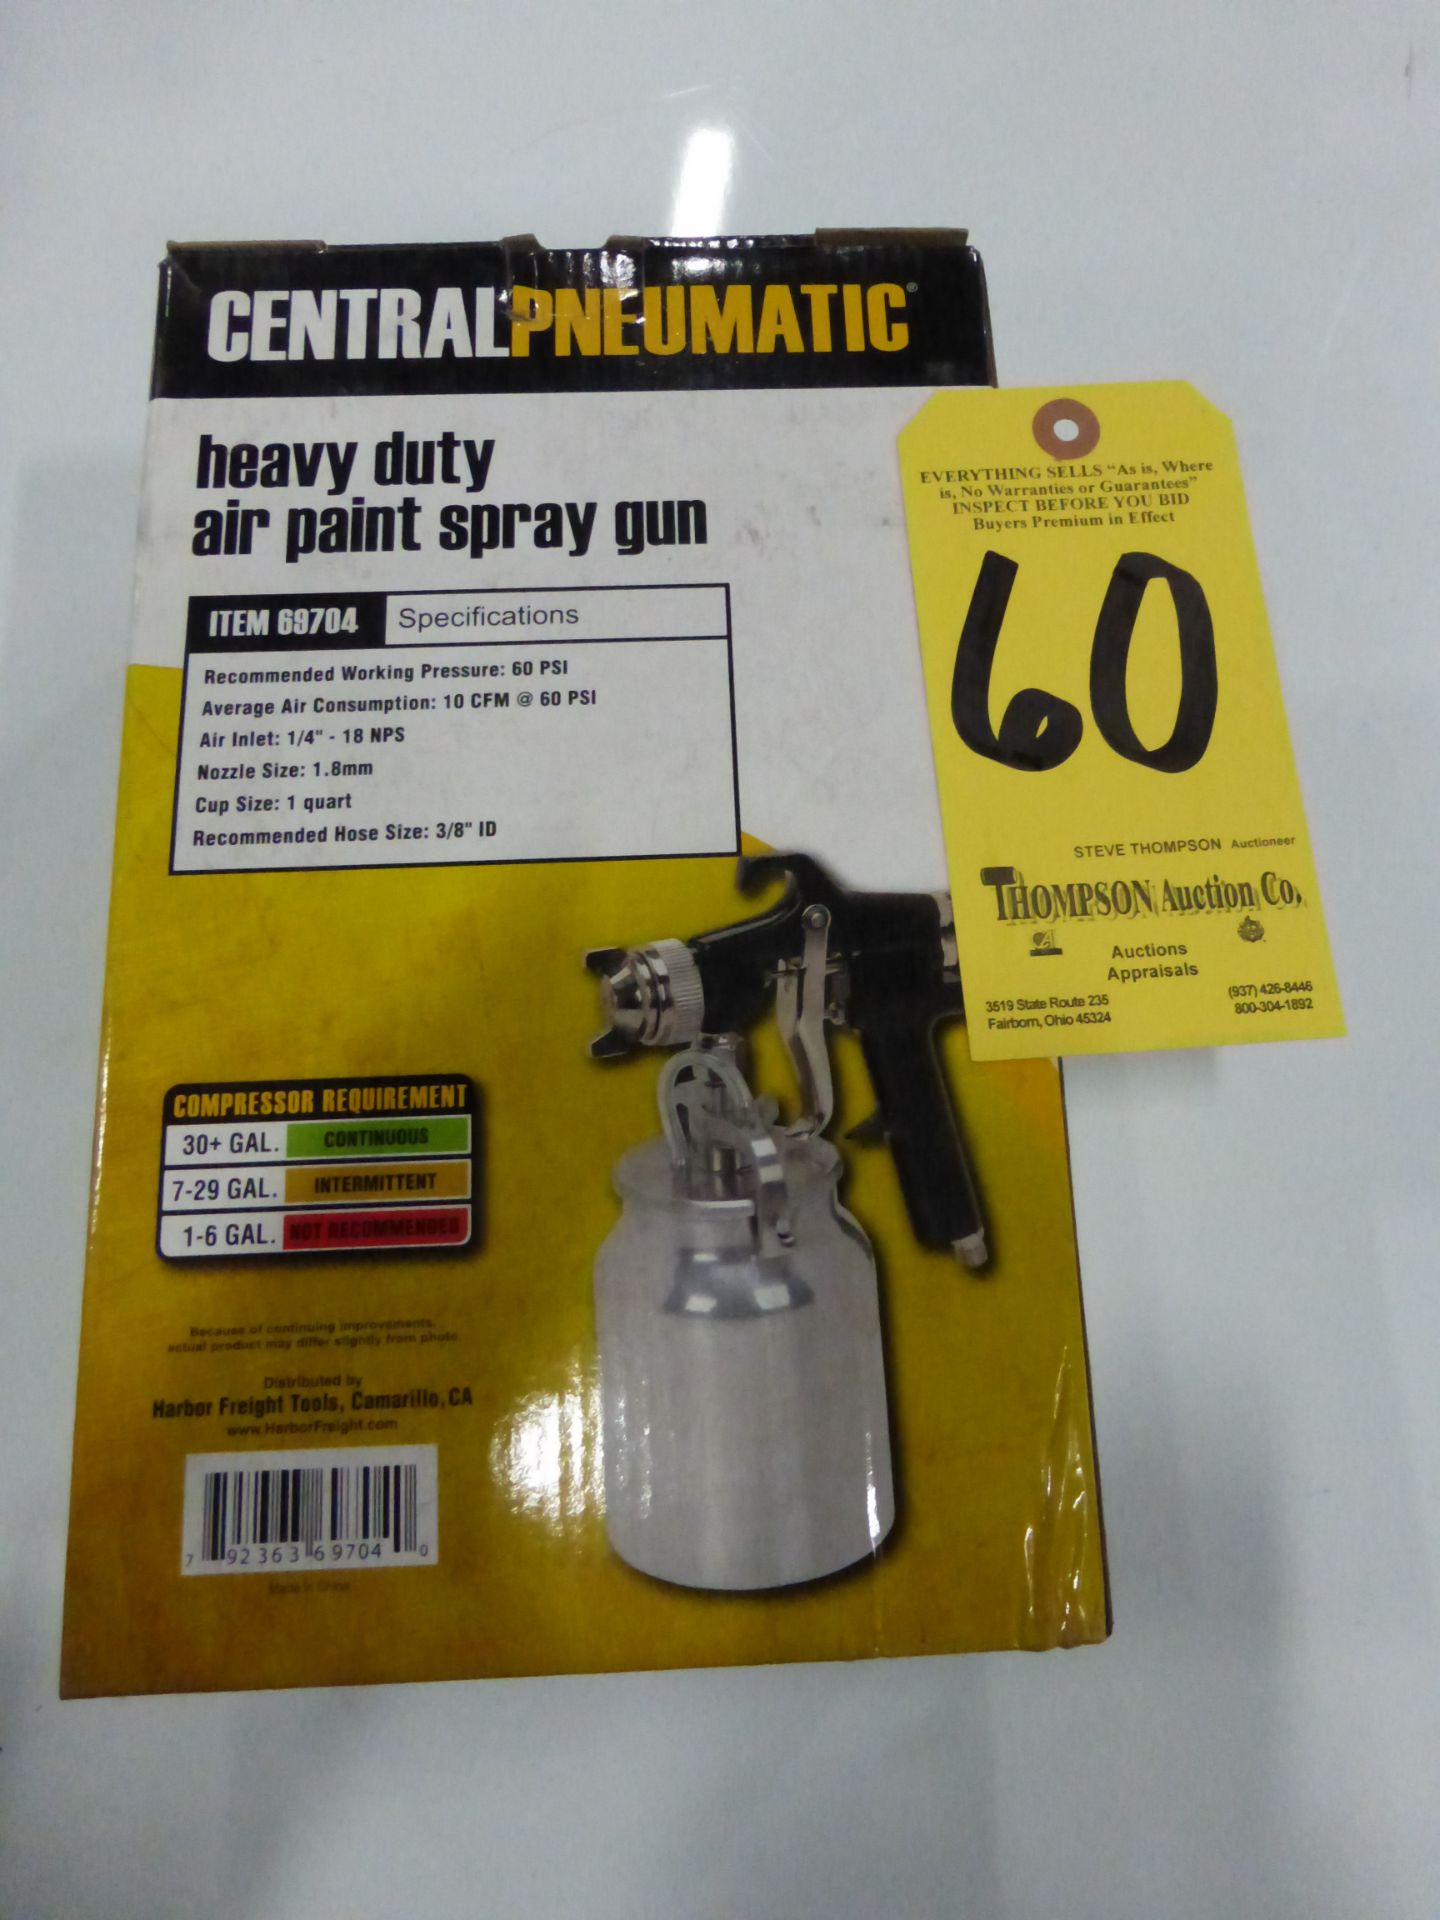 Central Pneumatic Air Paint Spray Gun